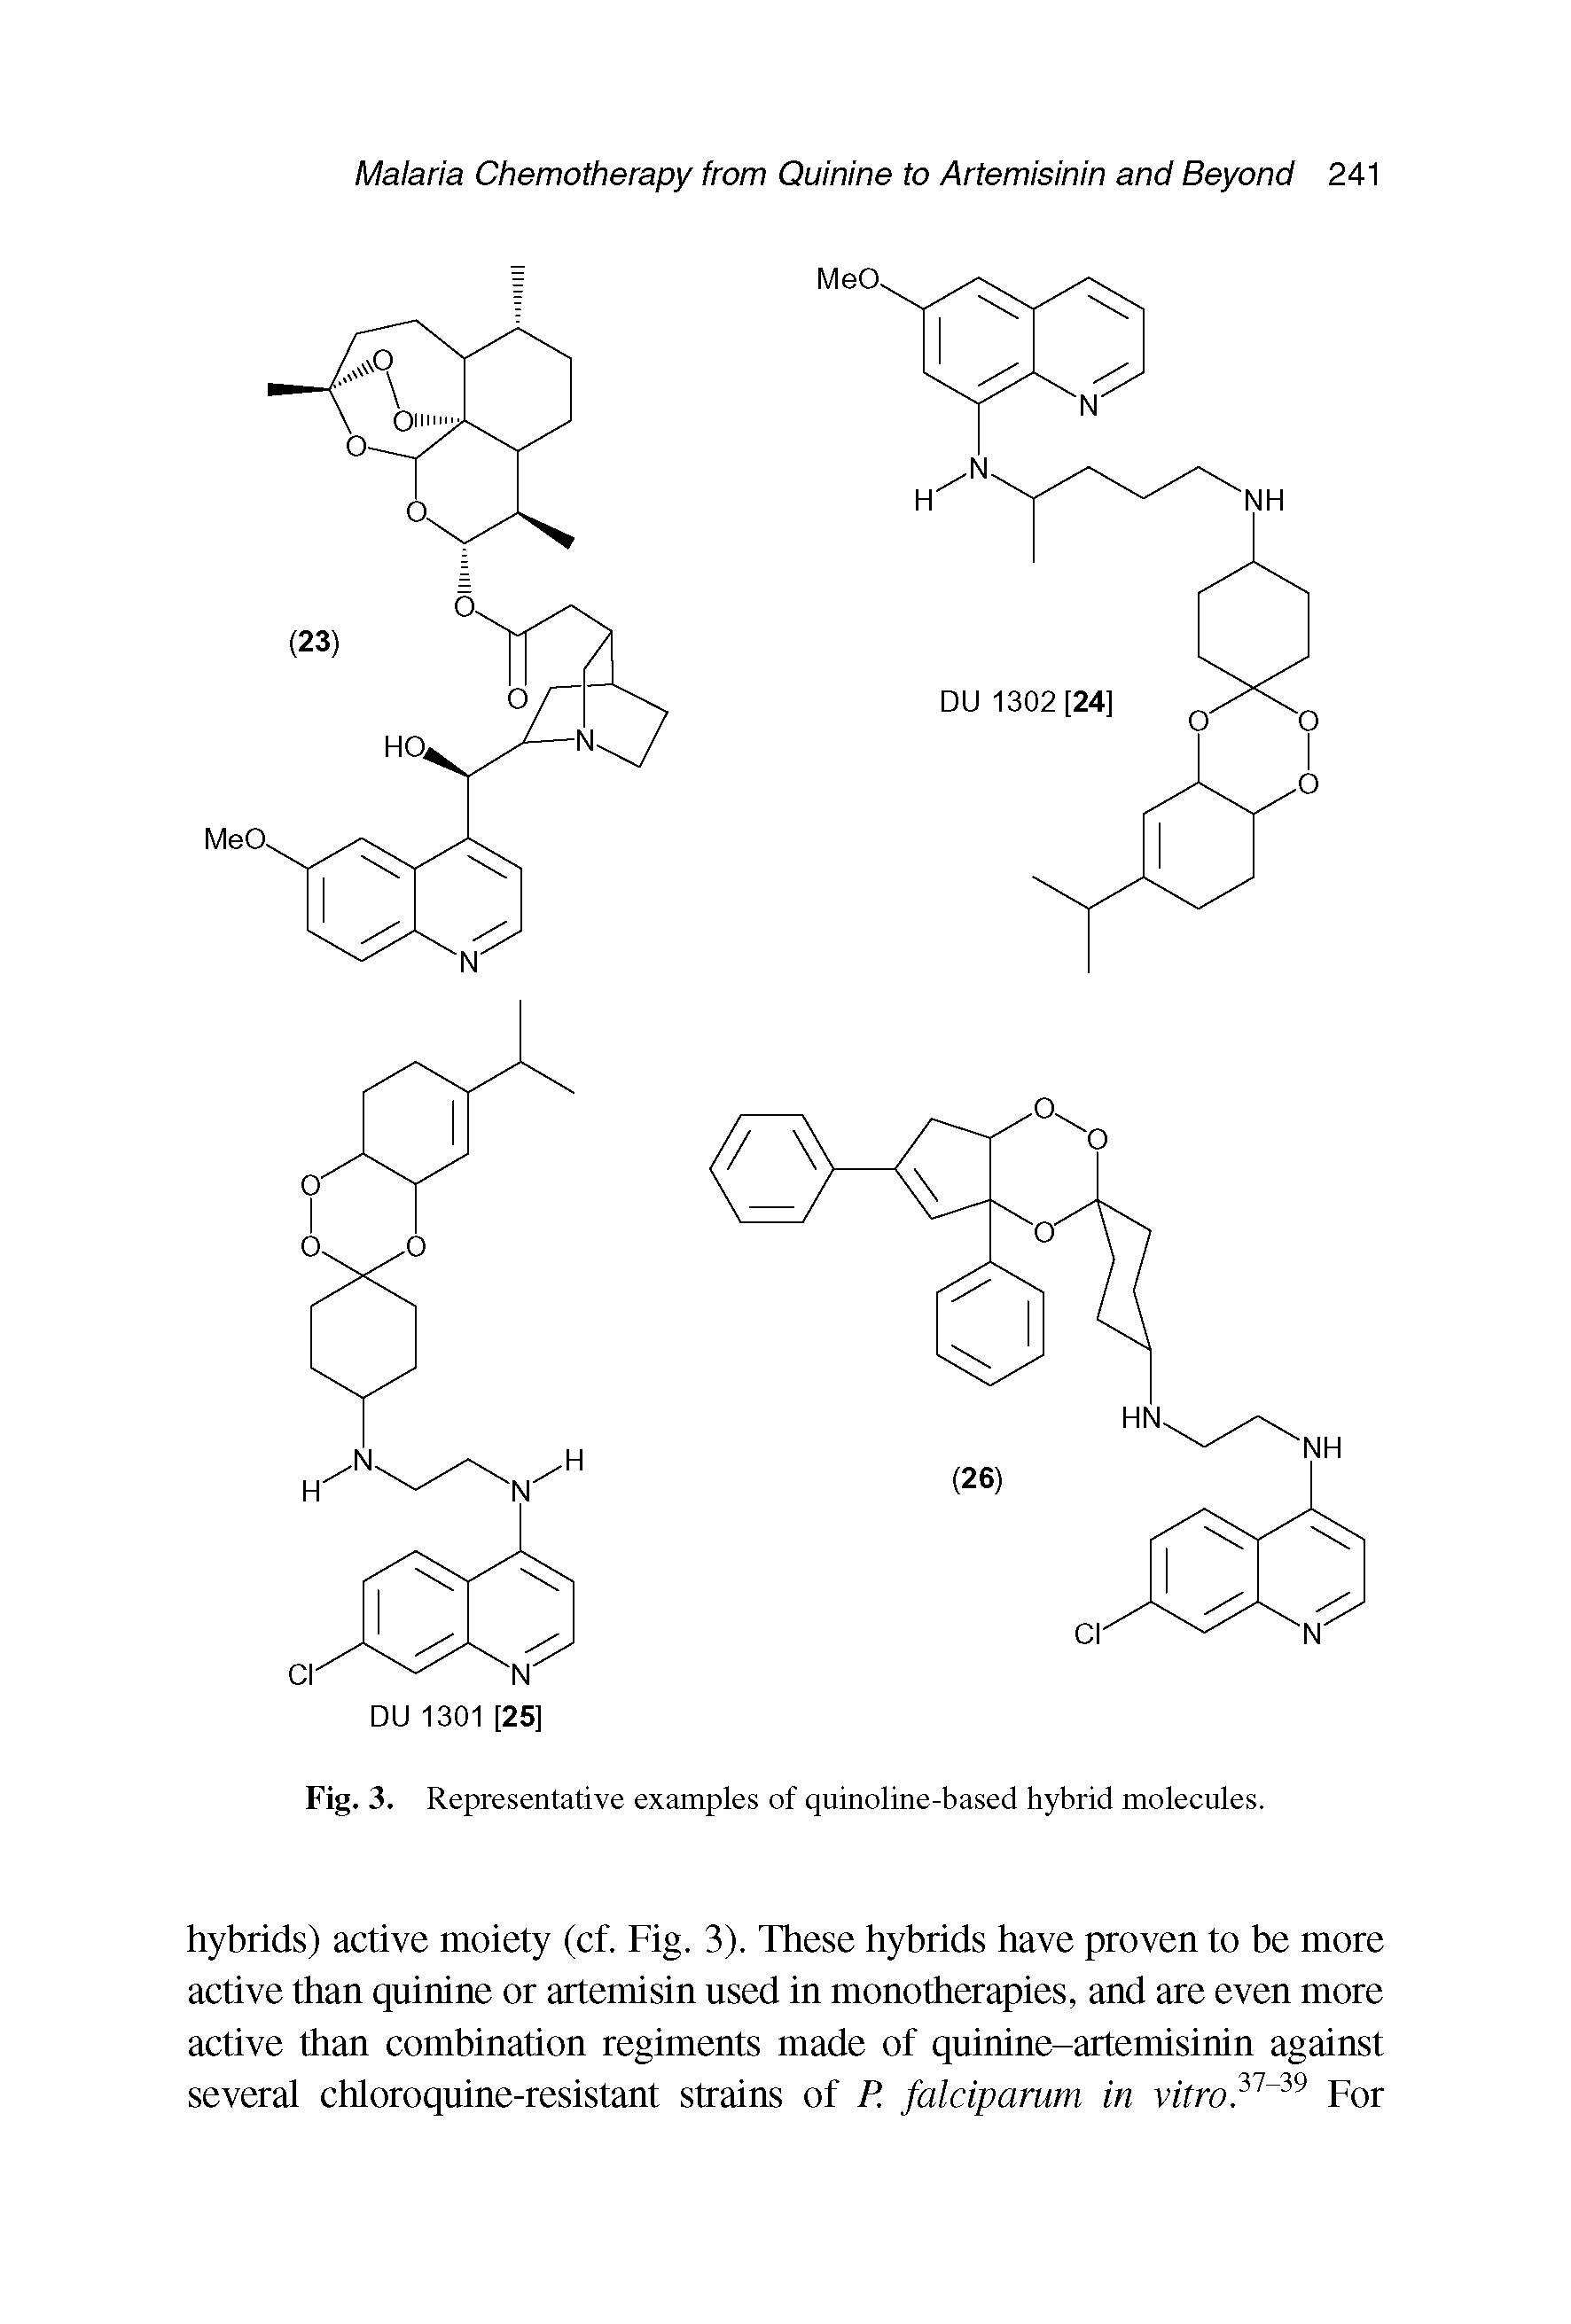 Fig. 3. Representative examples of quinoline-based hybrid molecules.